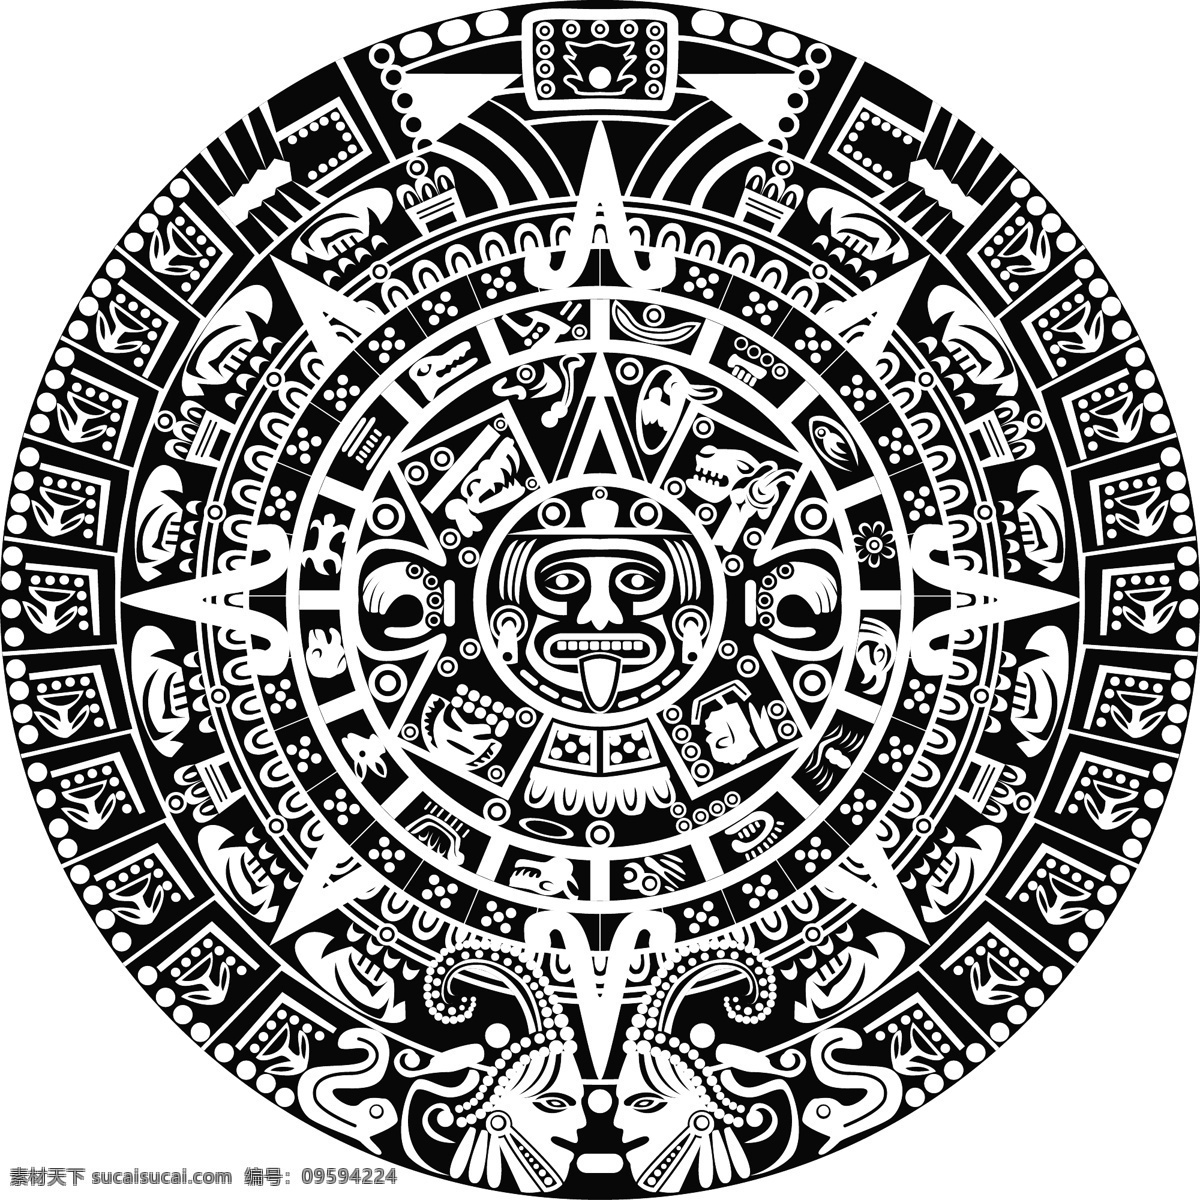 玛雅纹身 玛雅符号 玛雅 古代 古老 手绘 图腾 考古图案 符号 图形 人物 动物 线条 花纹 抽象 矢量 底纹背景 背景底纹 底纹边框